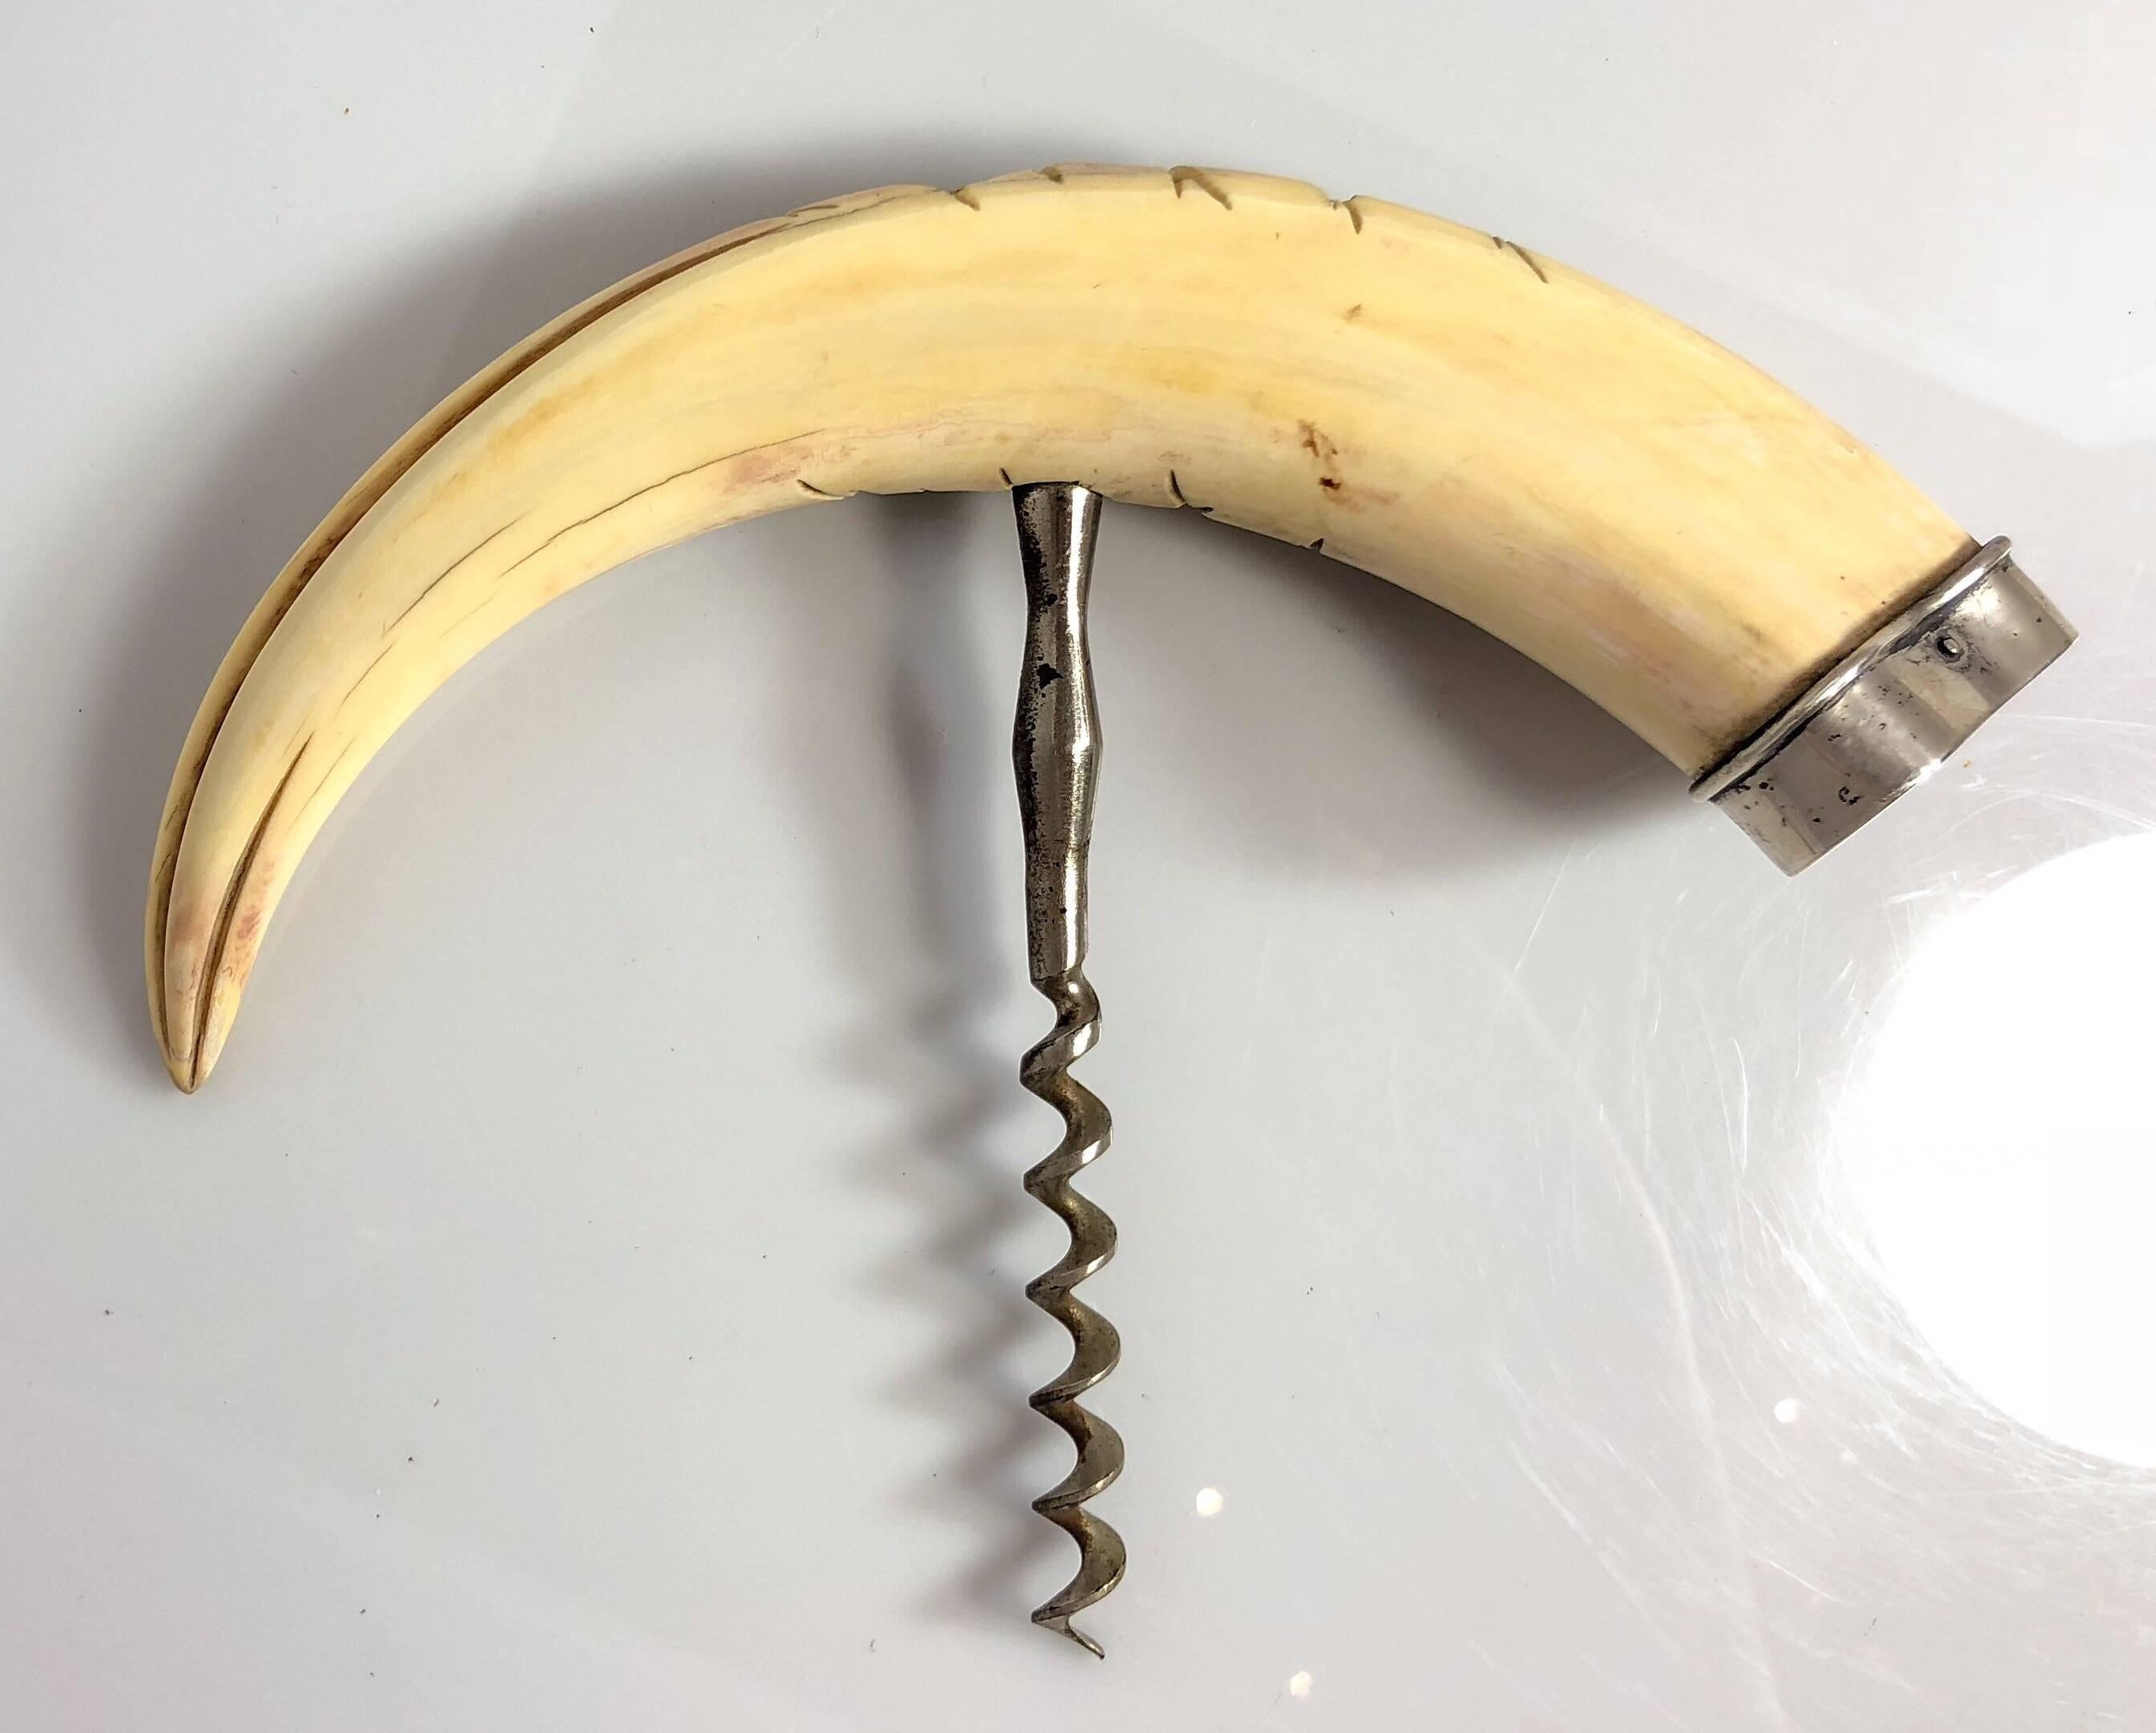 Antique carved boar's tusk corkscrew, 